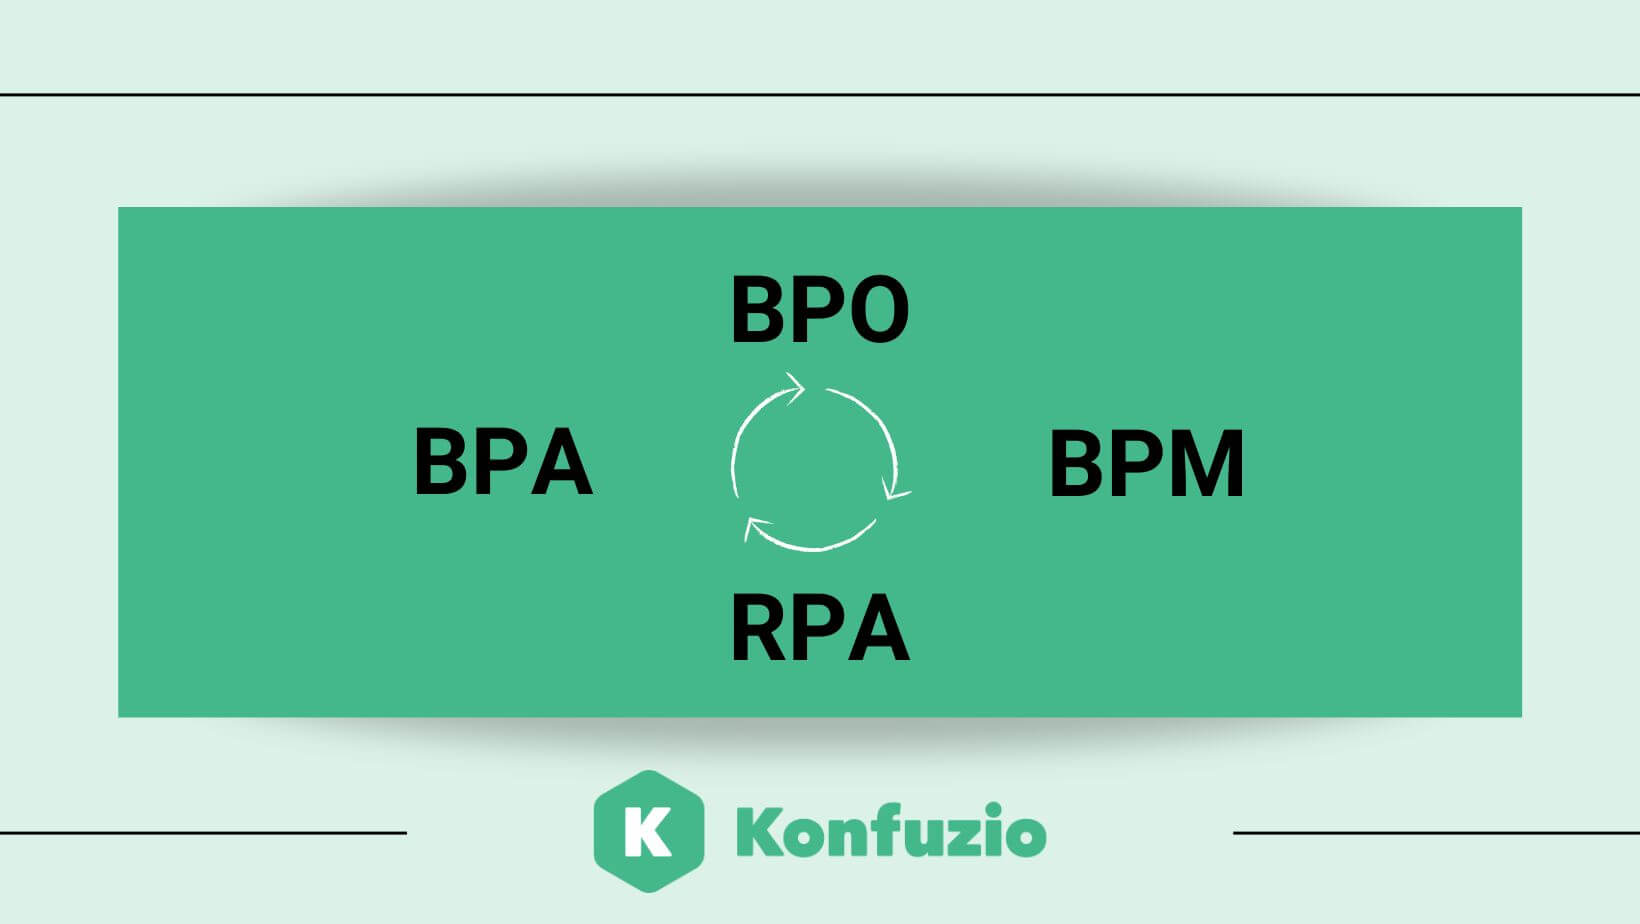 BPA Software BPO BPM RPA auf grünem Hintergrund